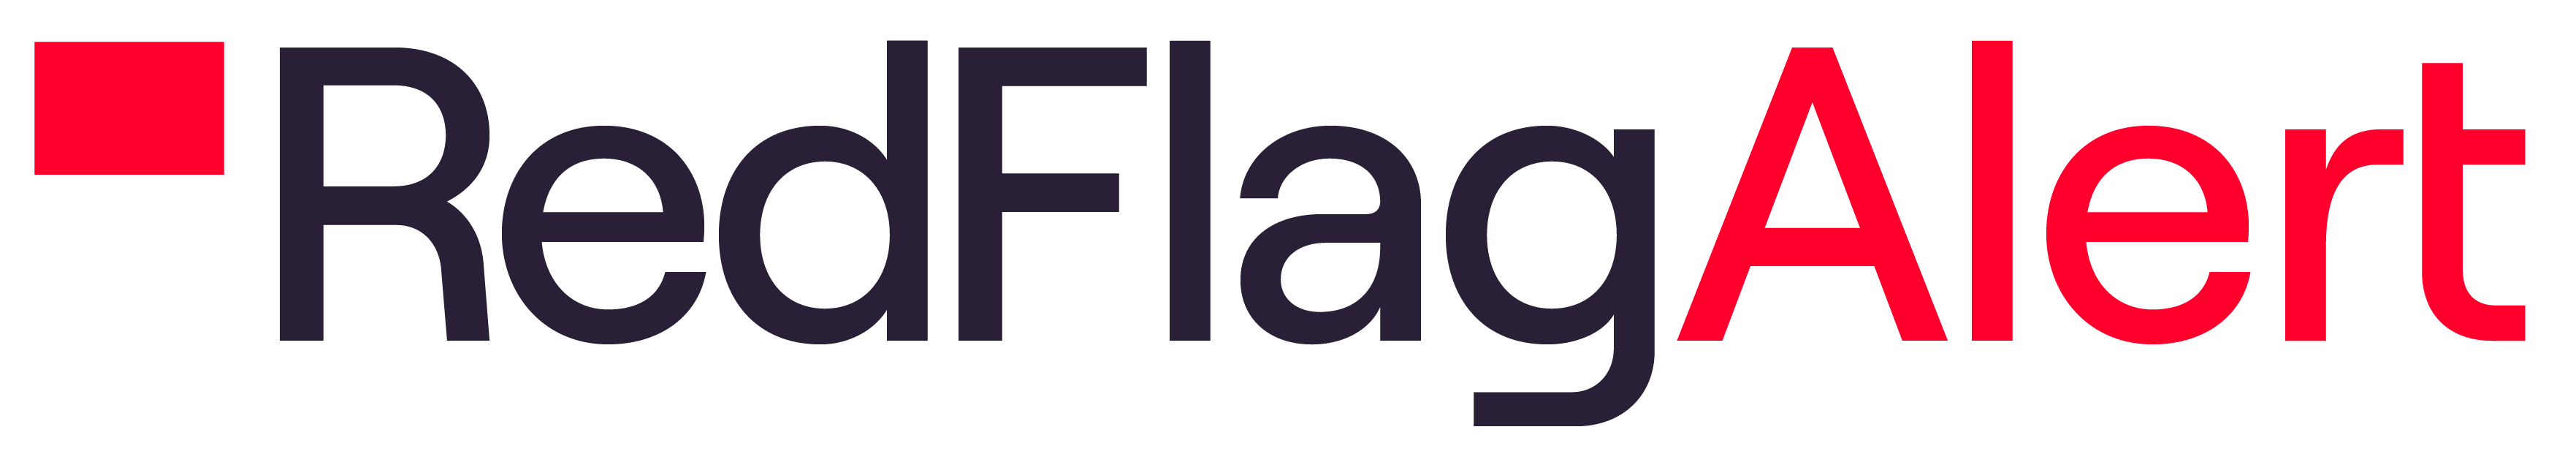 Red-Flag-Logo_Dark